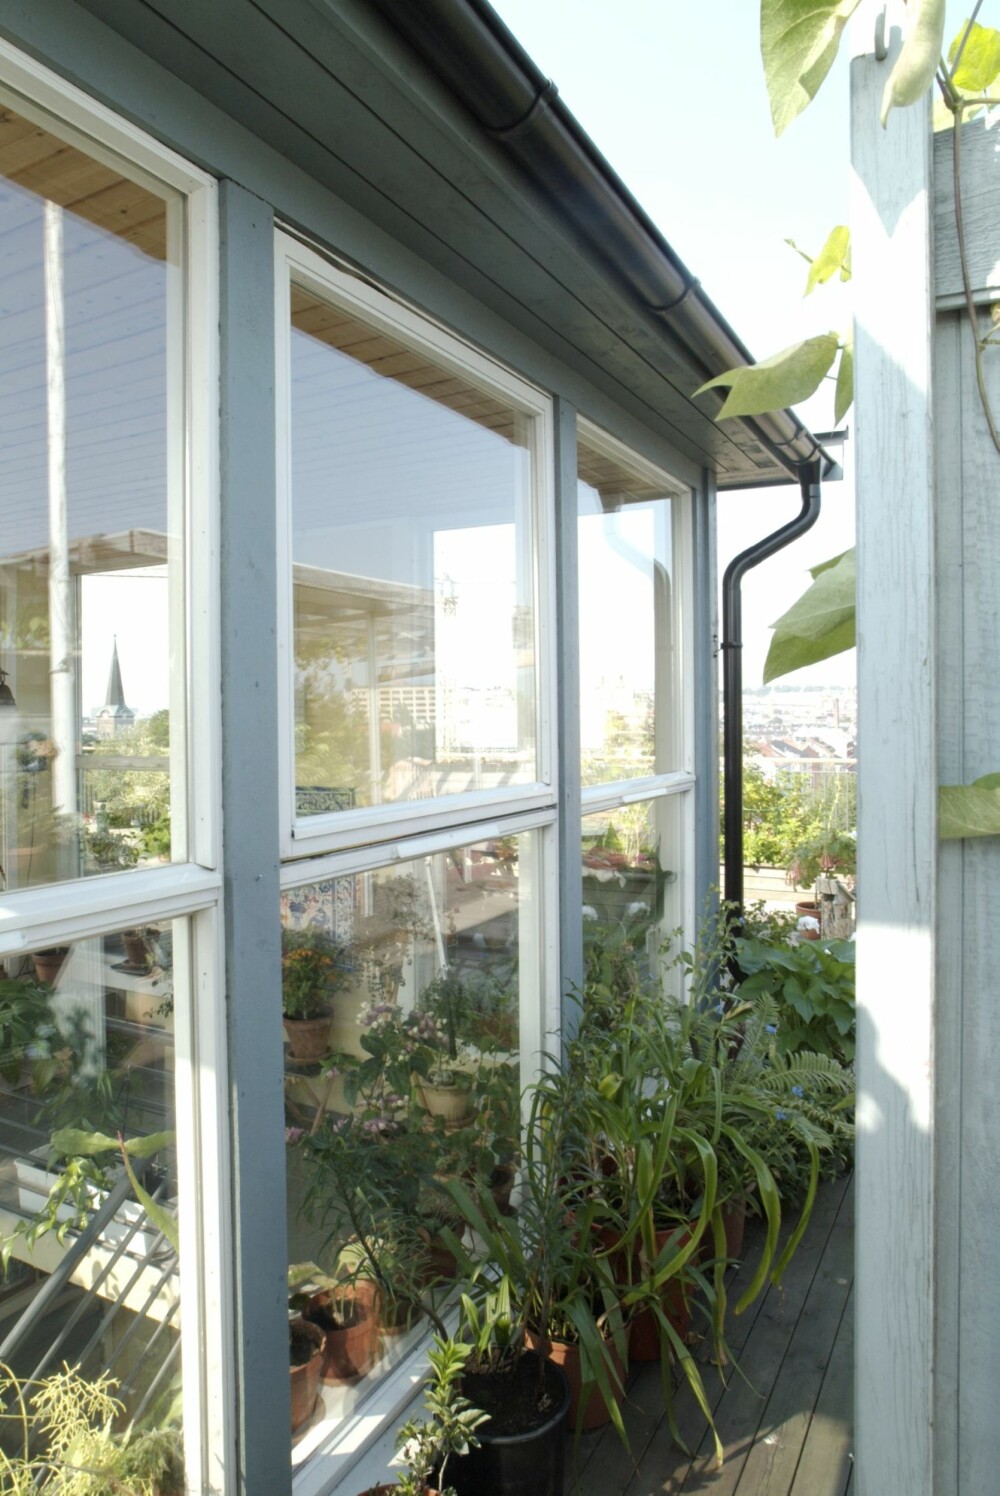 ET STED FOR TRIVSEL: De store vindusflatene gjør takhytta til et hyggelig, transparent sted midt i alt det grønne.